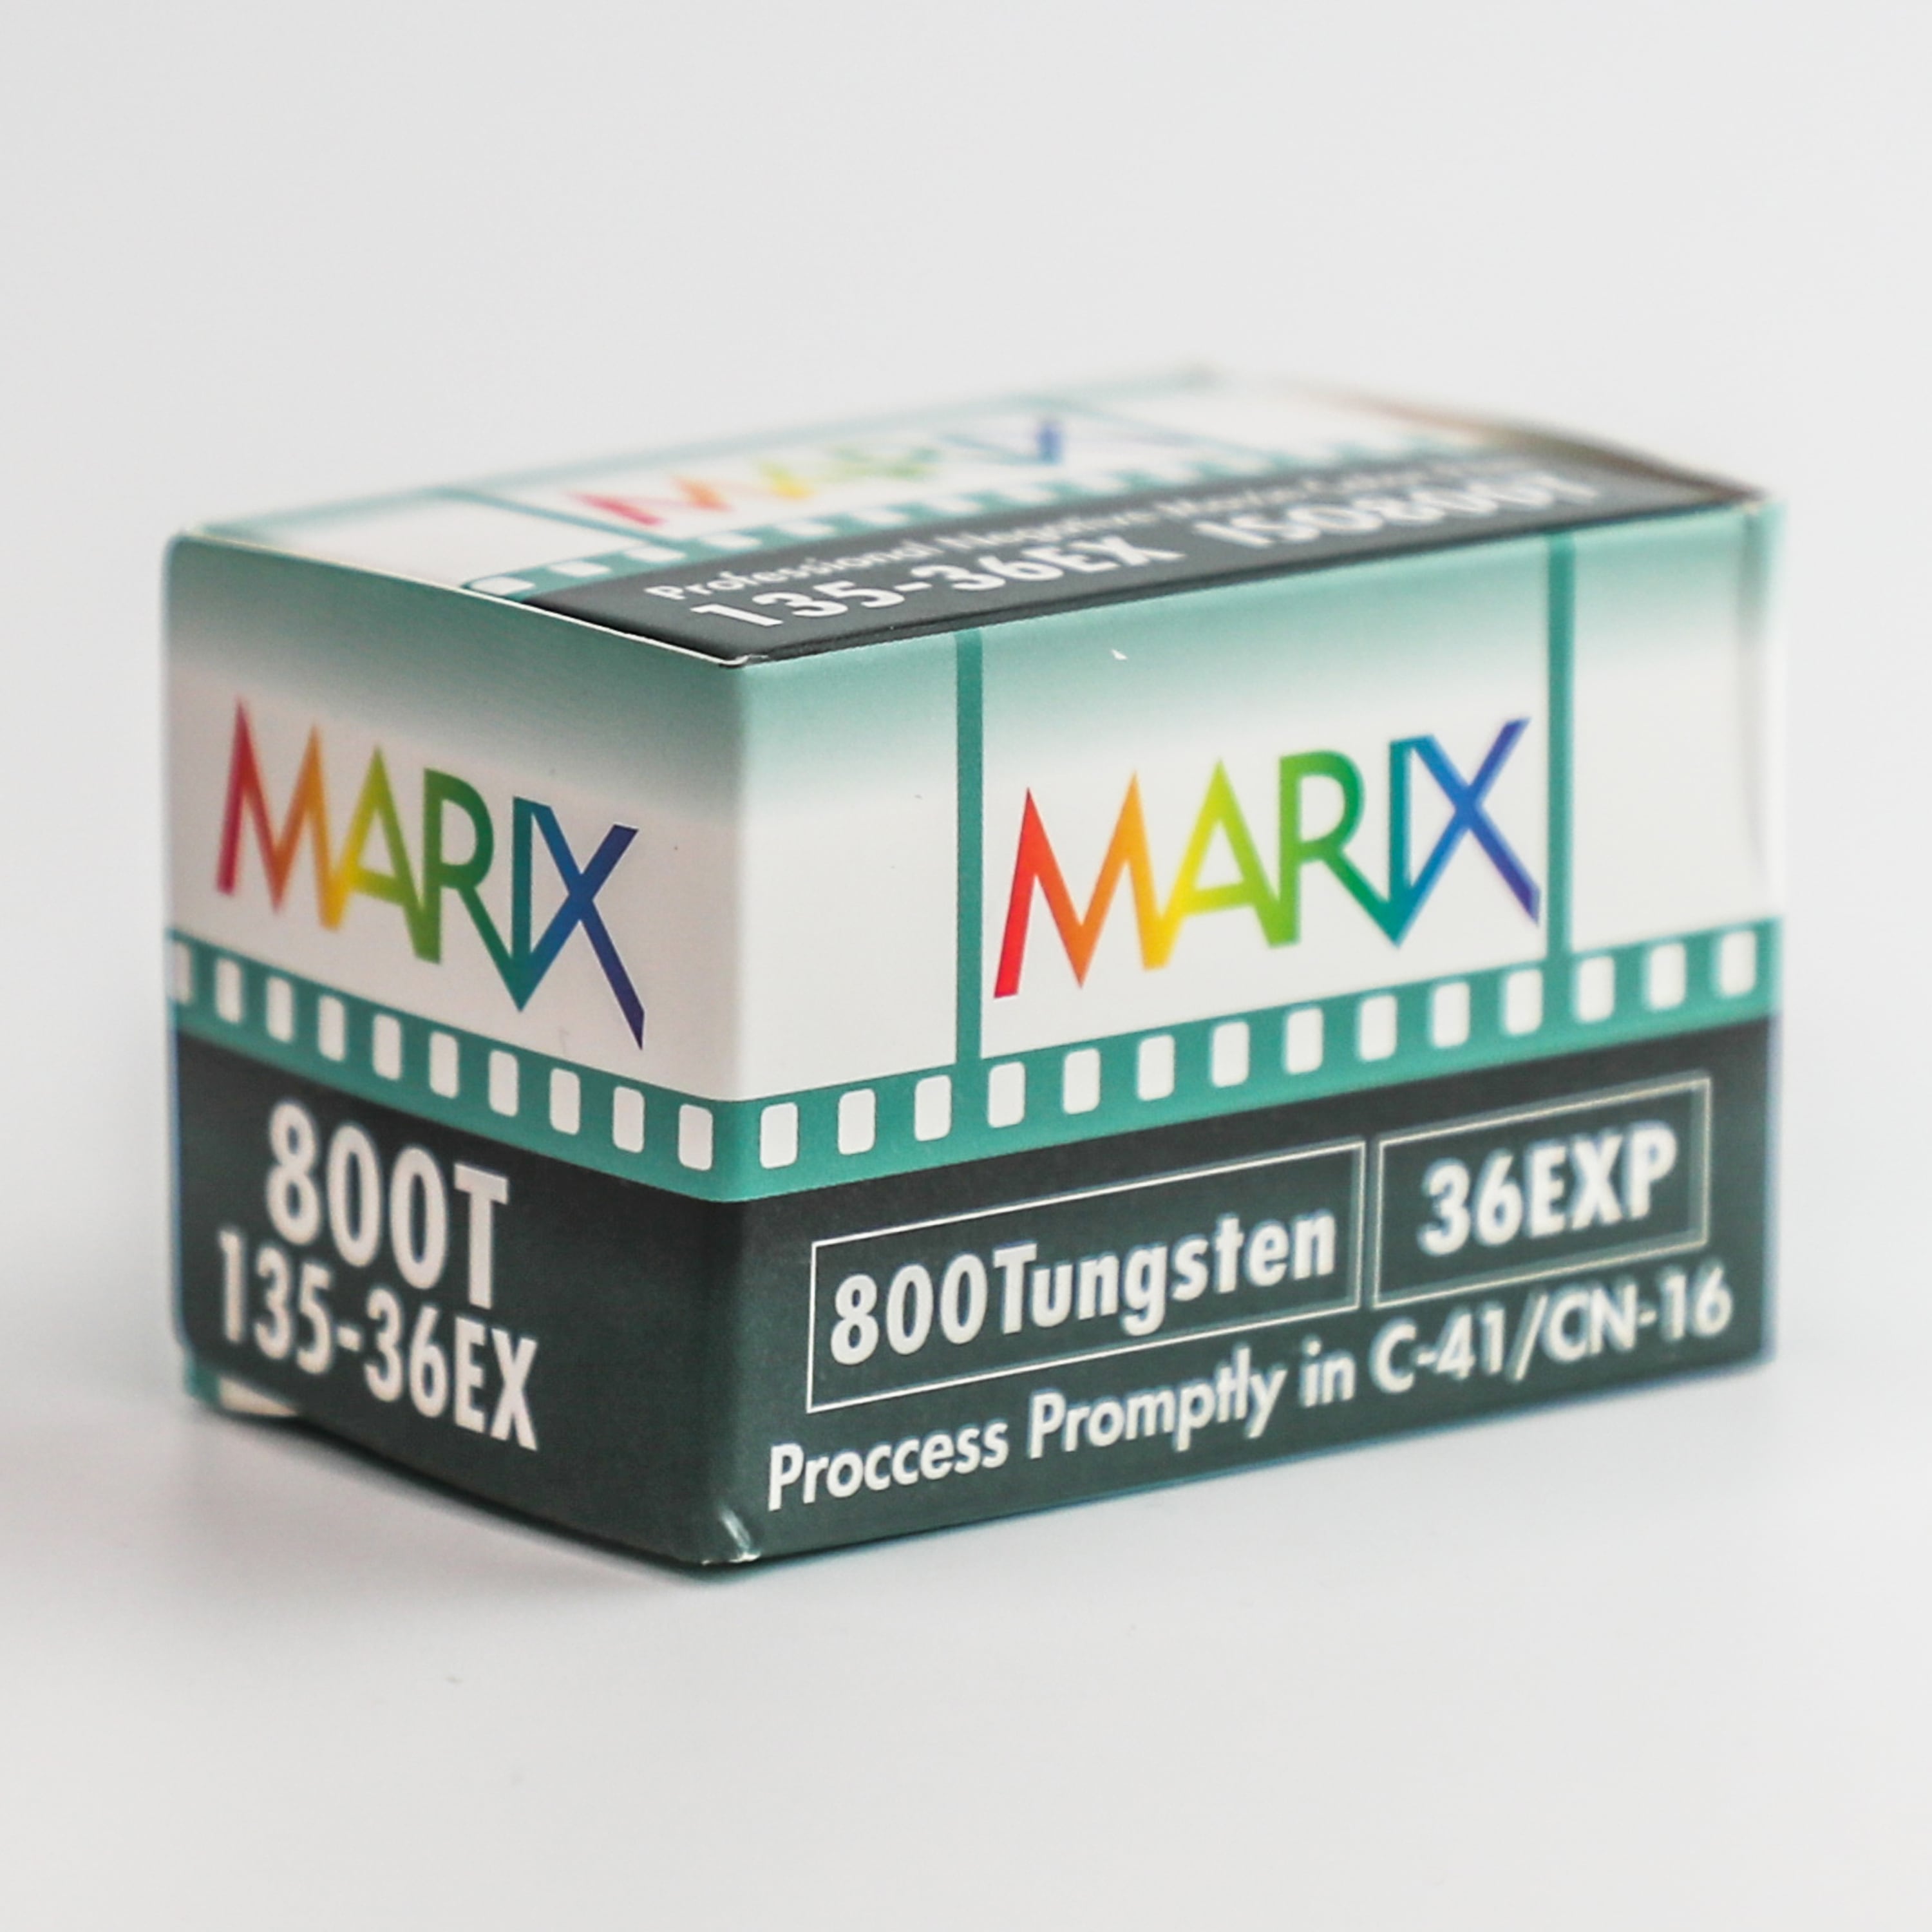 MARIX マリックス カラー ネガフィルム 400D 36枚 5個セット